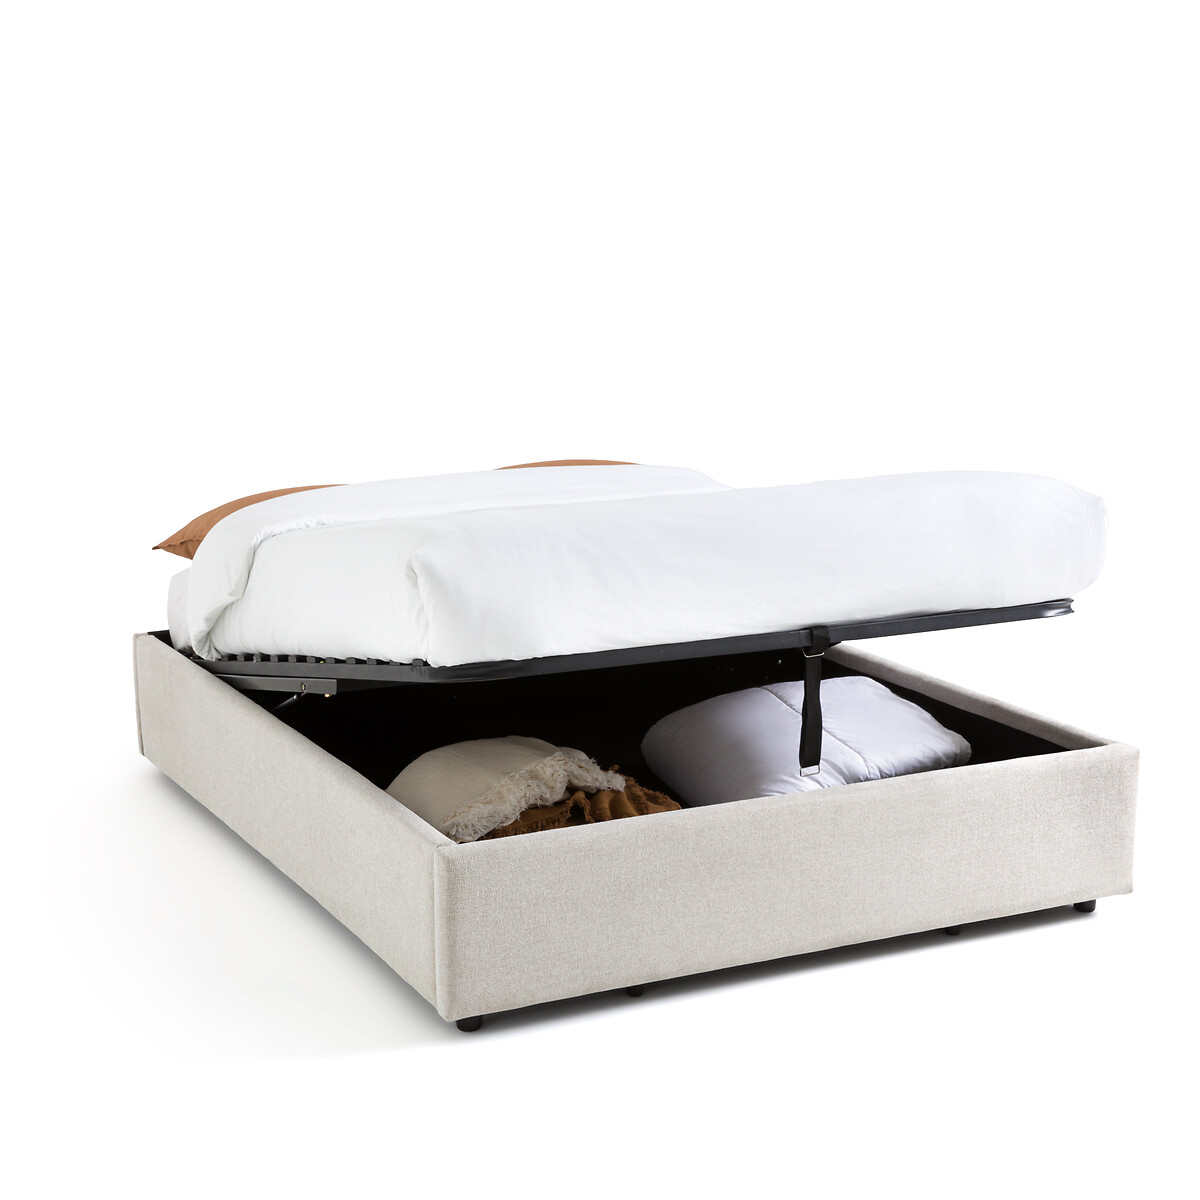 Кровать С реечным дном и ящиком внутри Papilla 180 x 200 см бежевый LaRedoute, размер 180 x 200 см - фото 1